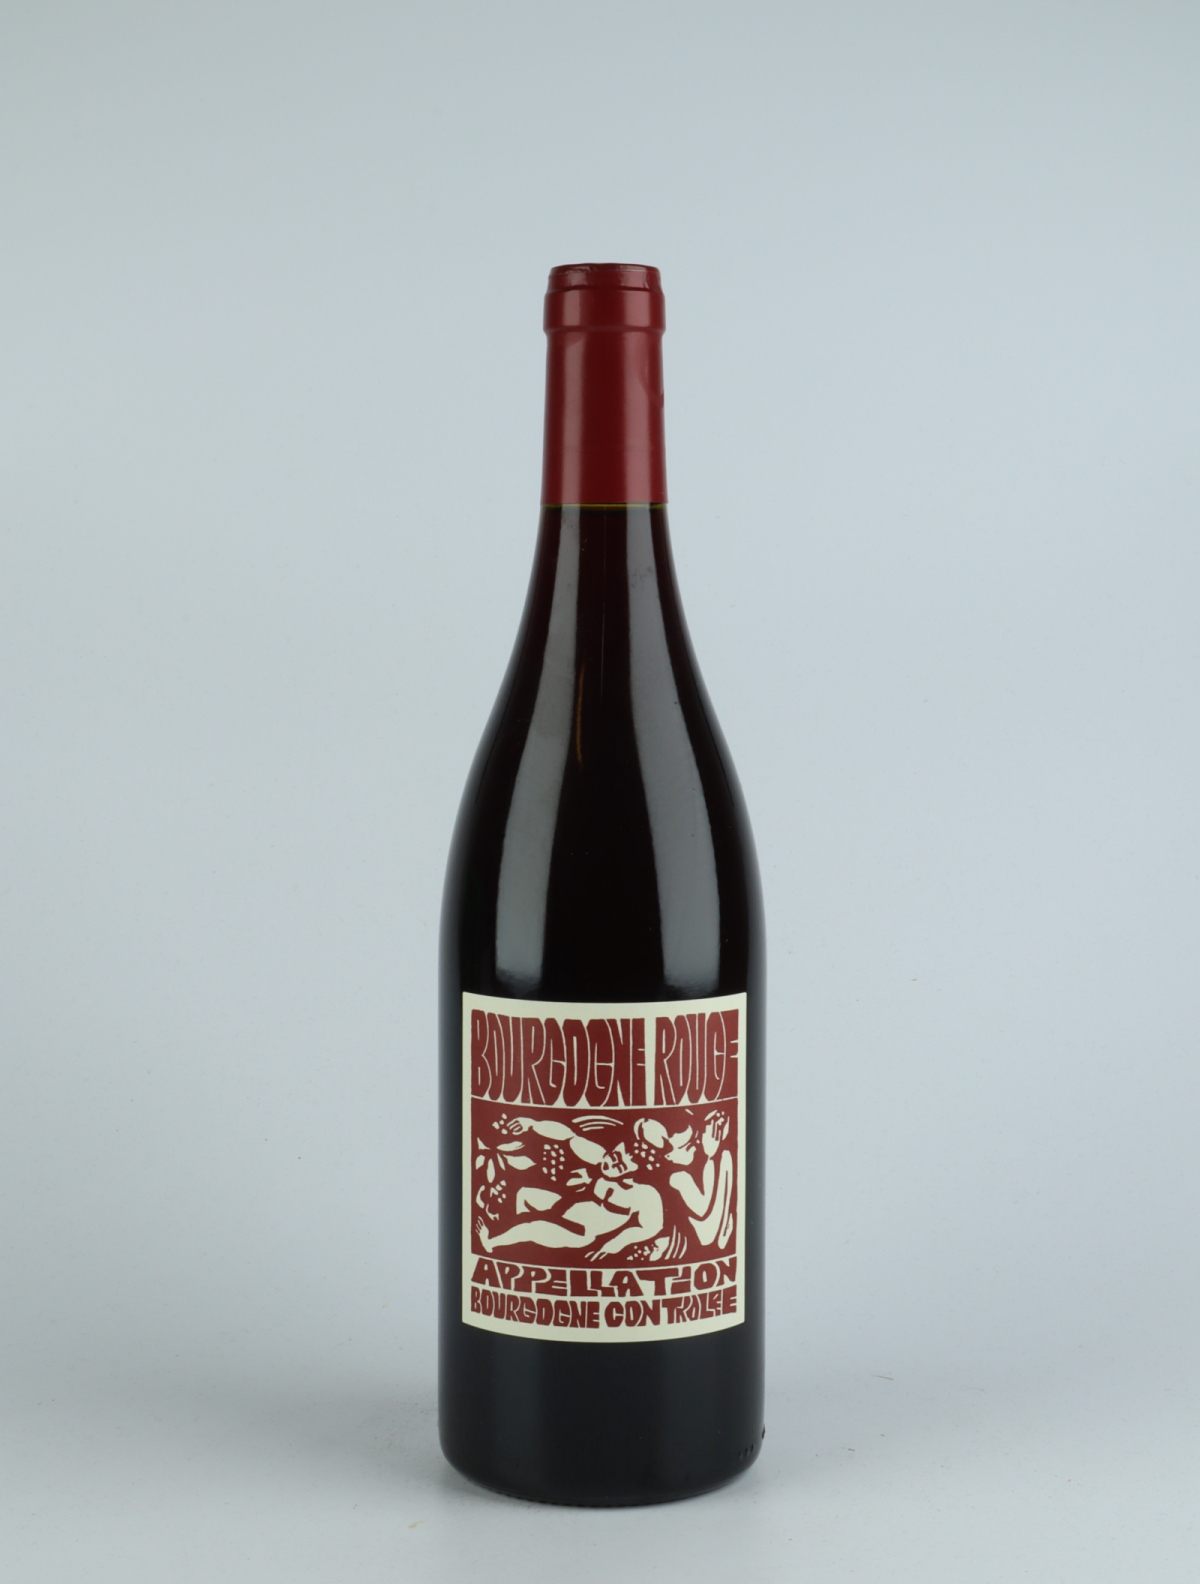 A bottle 2019 Bourgogne Rouge Red wine from La Sœur Cadette, Burgundy in France